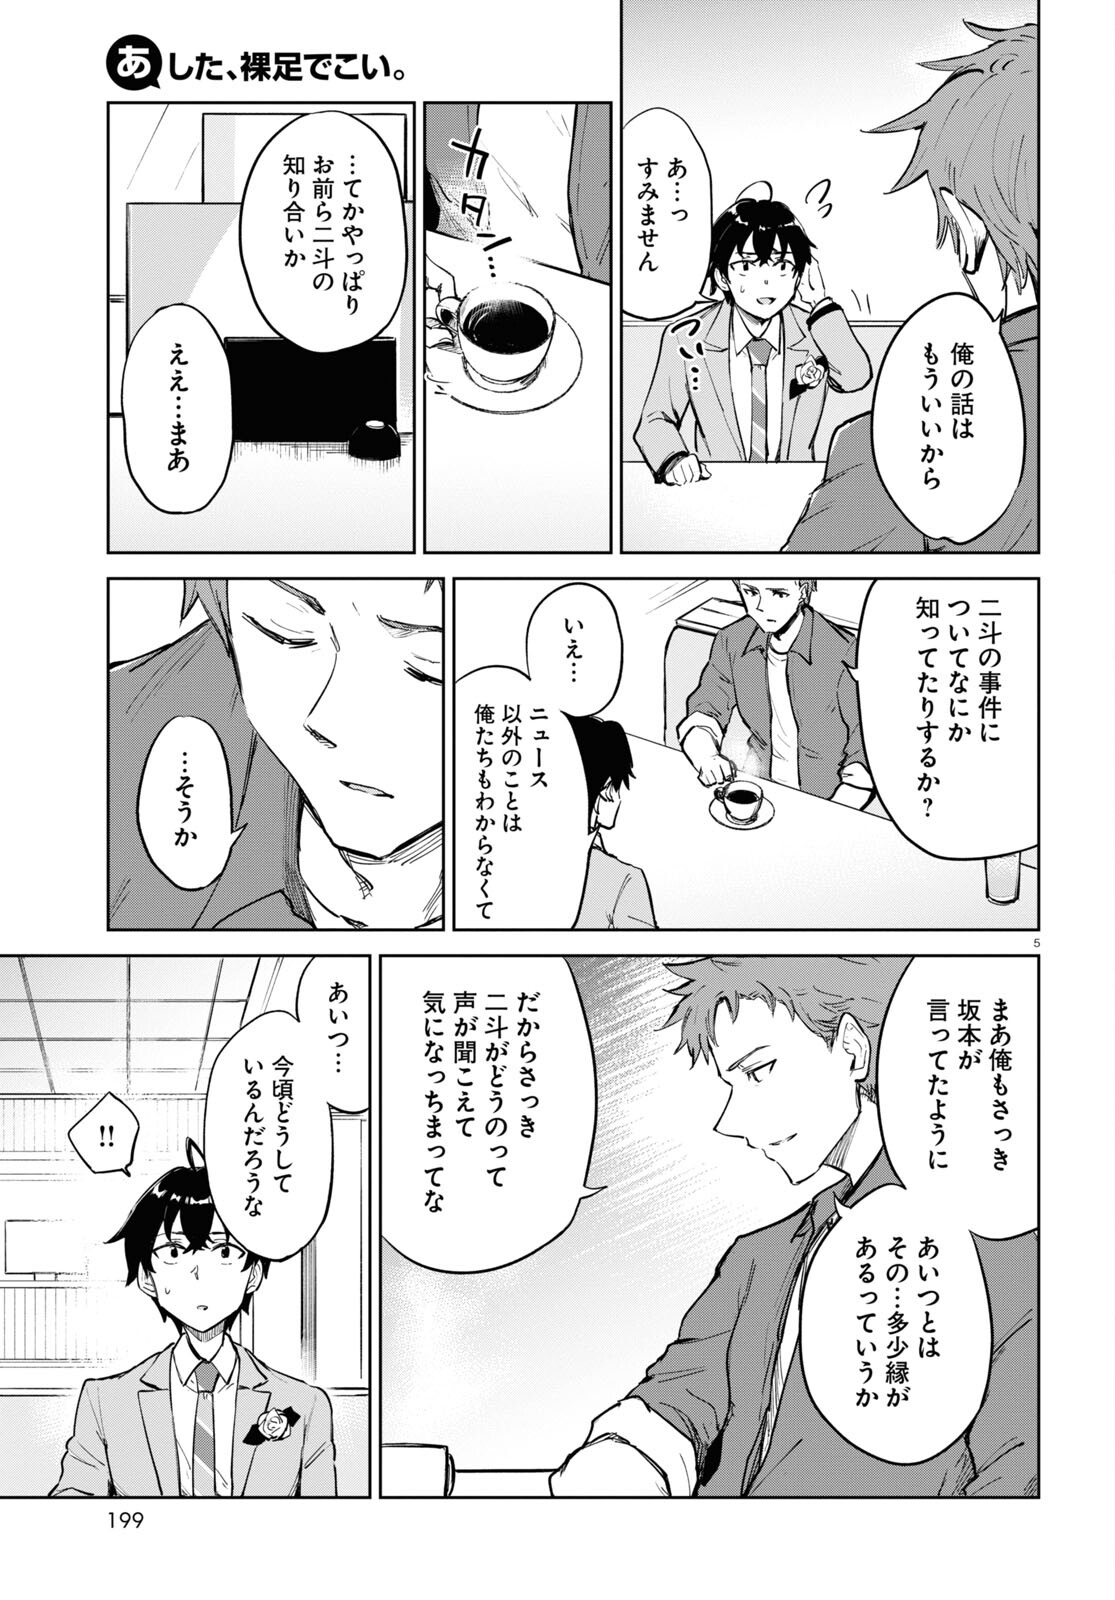 Ashita, Hadashi de Koi. - Chapter 4 - Page 5